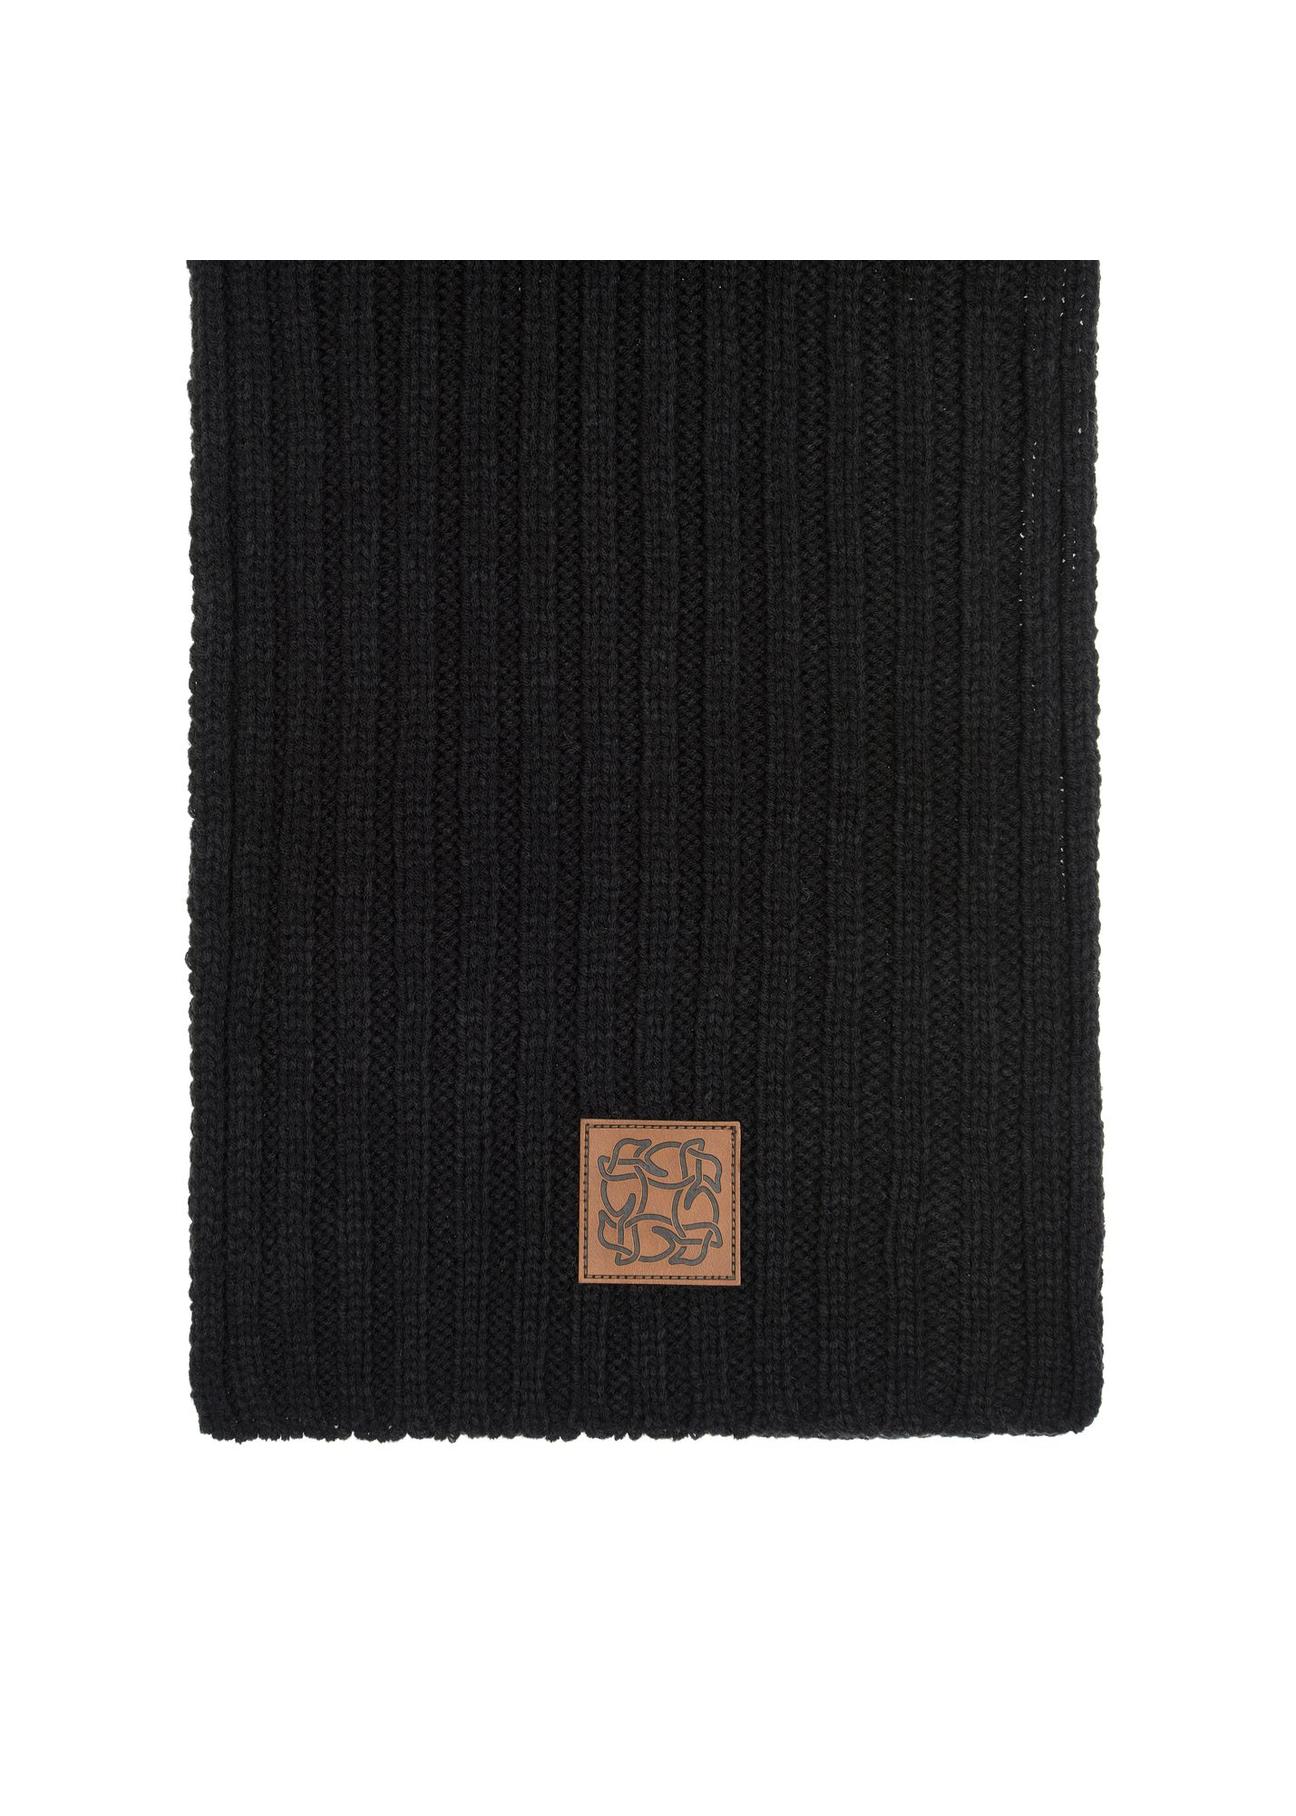 Długi czarny szalik damski SZADT-0150-99(Z23)